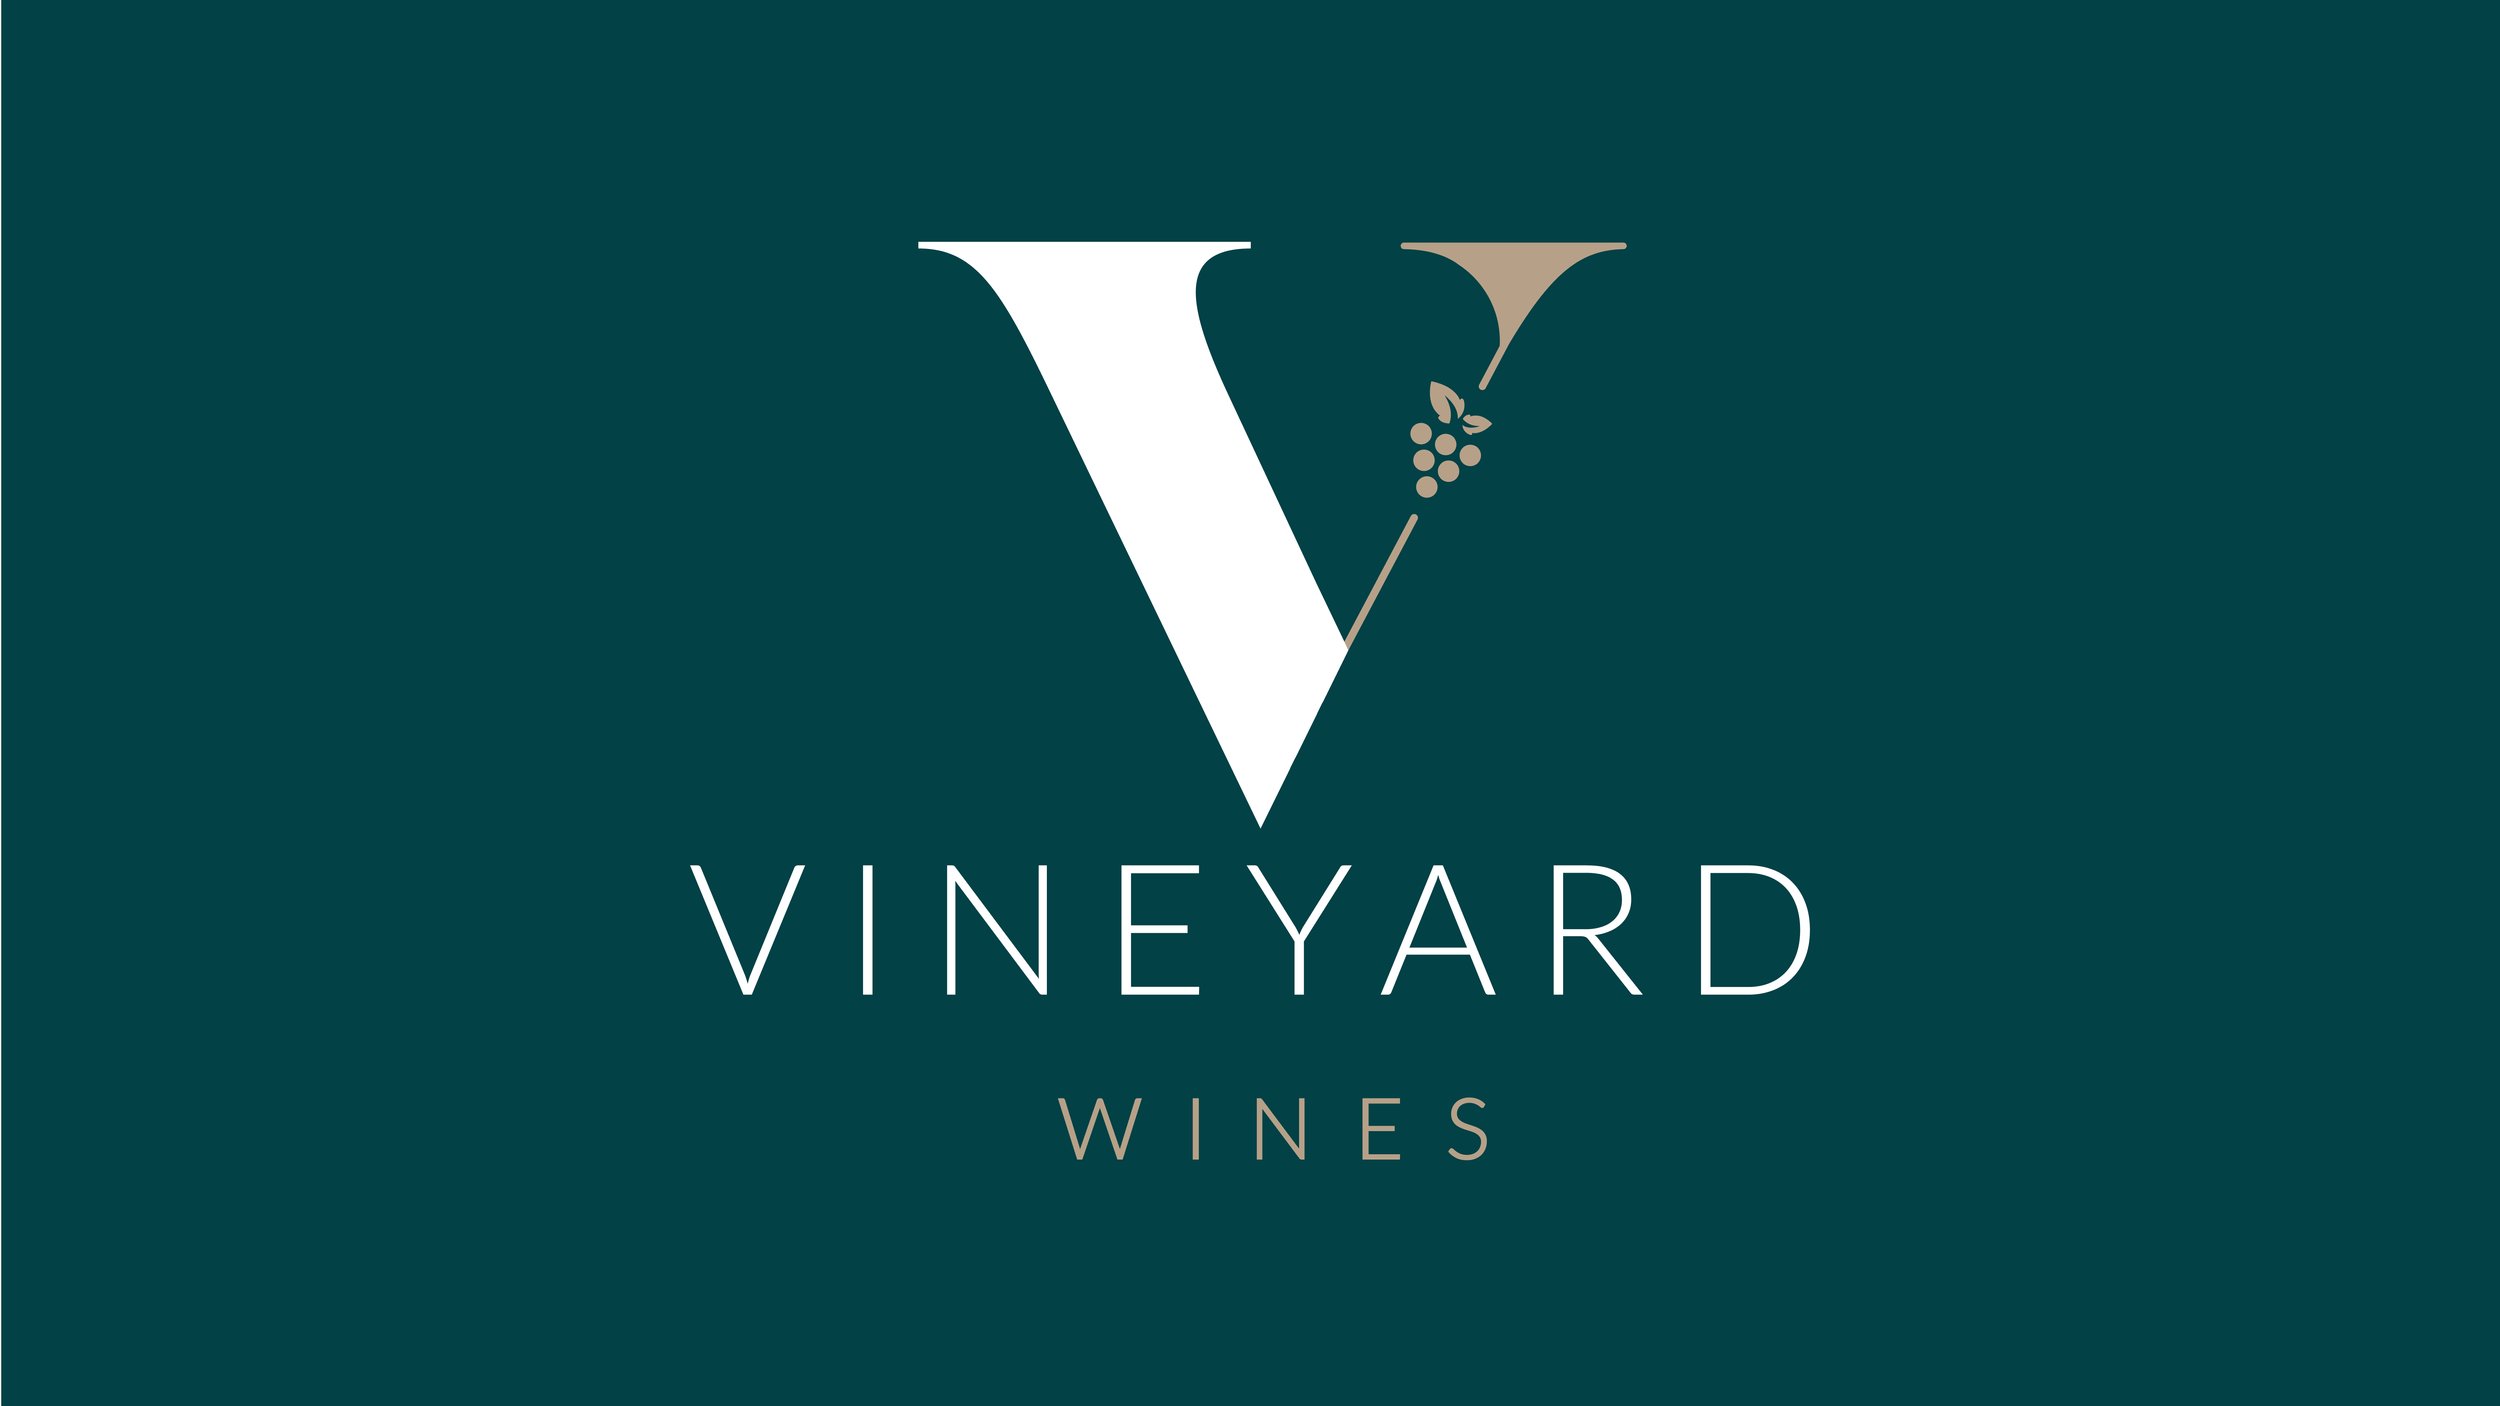 Vineyard wine logo-01.jpg